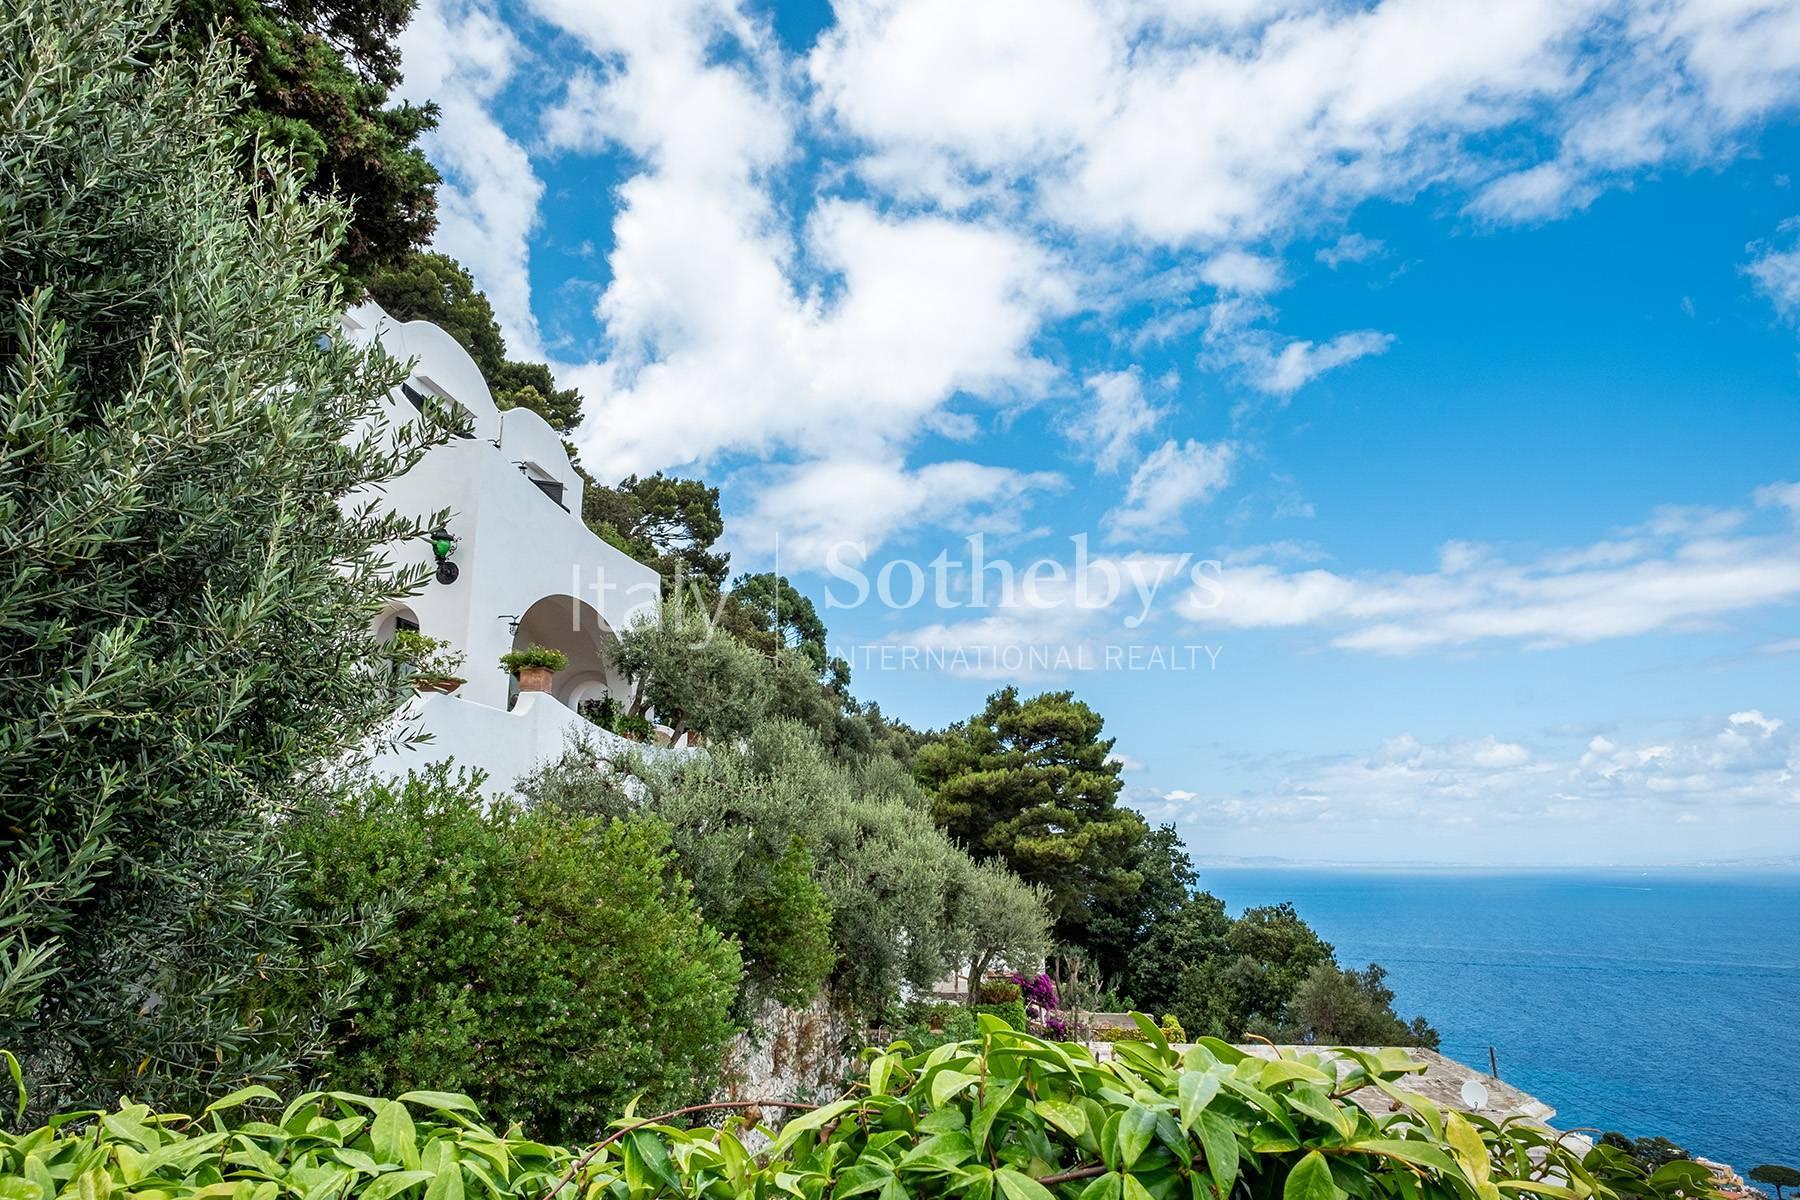 Villa Luisella in the heart of Capri - 5